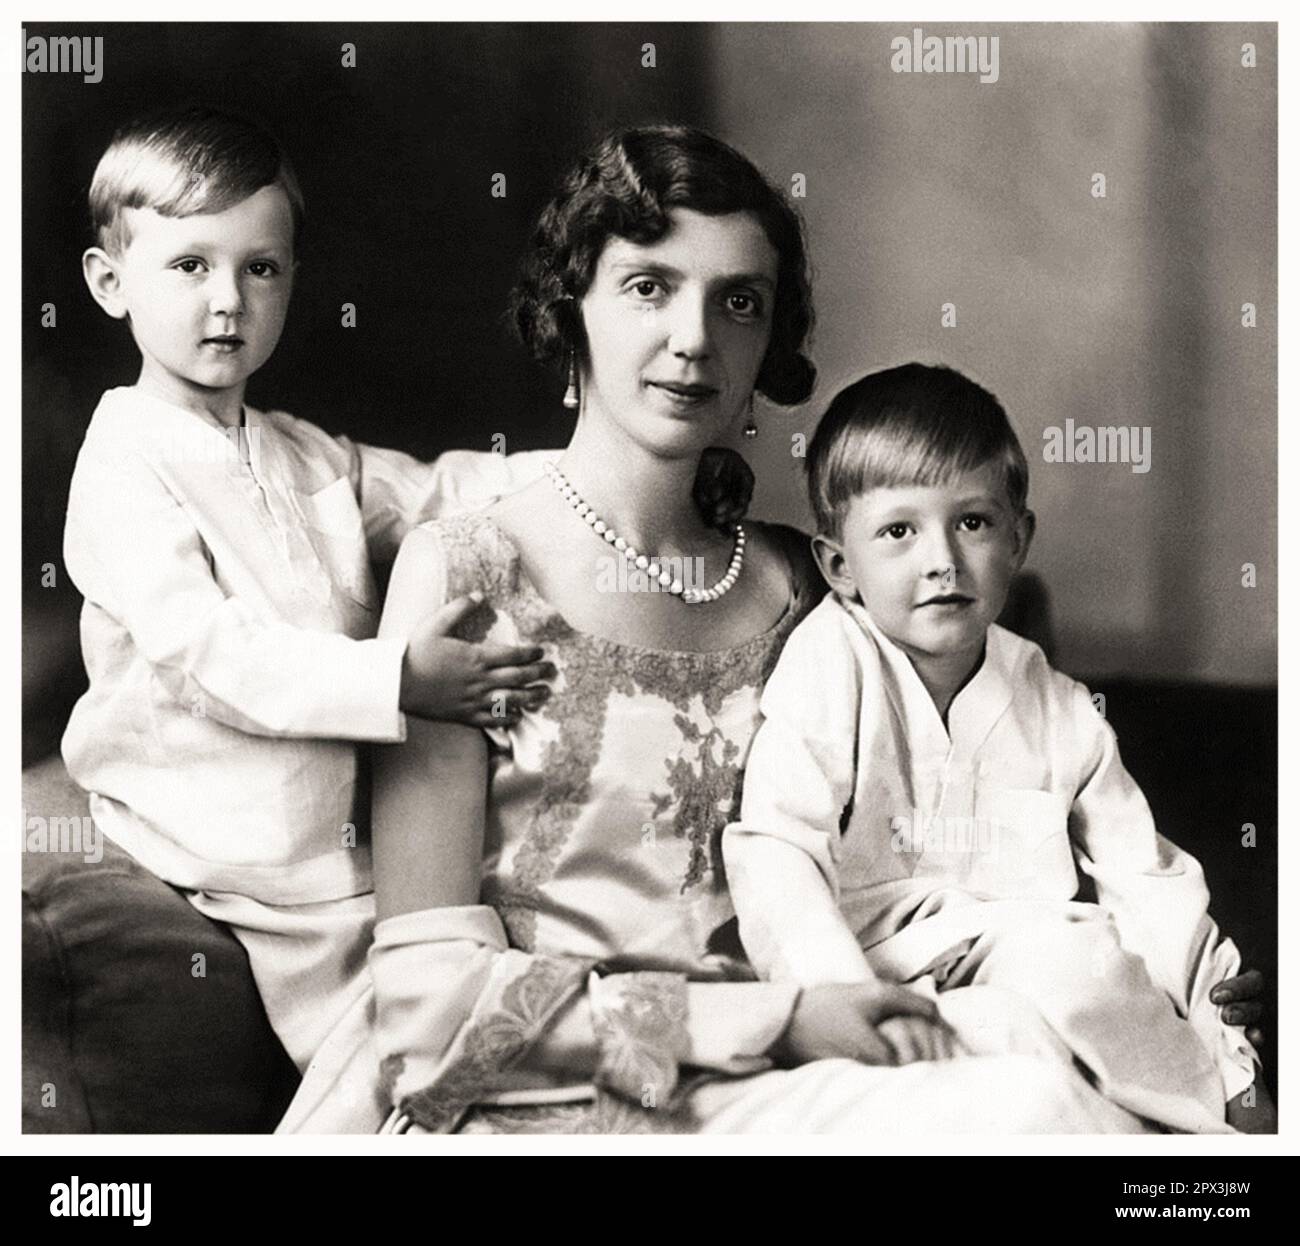 1932 c., Rom , ITALIEN : die italienische Prinzessin MAFALDA di SAVOIA ( 1902 - 1944 ) , verheiratet mit dem deutschen Prinzen Filippo d' Assia Kassel ( Philipp von HESSEN ) , auf diesem Foto mit Söhnen : MORITZ ( Maurizio , 1926 - 2013 ) und HENRICH ( Enrico , 1927 - 1999 ). Mafalda war die Tochter des italienischen Königs VITTORIO EMANUELE III und der Königin ELENA ( Helene del Montenegro ). Foto: EVA BARRETT ( 1879 - 1950 ). - SAVOY - principessa - ITALIA - personalità celebrità da BAMBINI - da piccolo da piccoli piccola - bambino - KIND - KINDHEIT - KINDHEIT - INFANZIA - PERSÖNLICHKEIT PROMINENTE - Persönlichkeiten Prominente wann war CHI Stockfoto